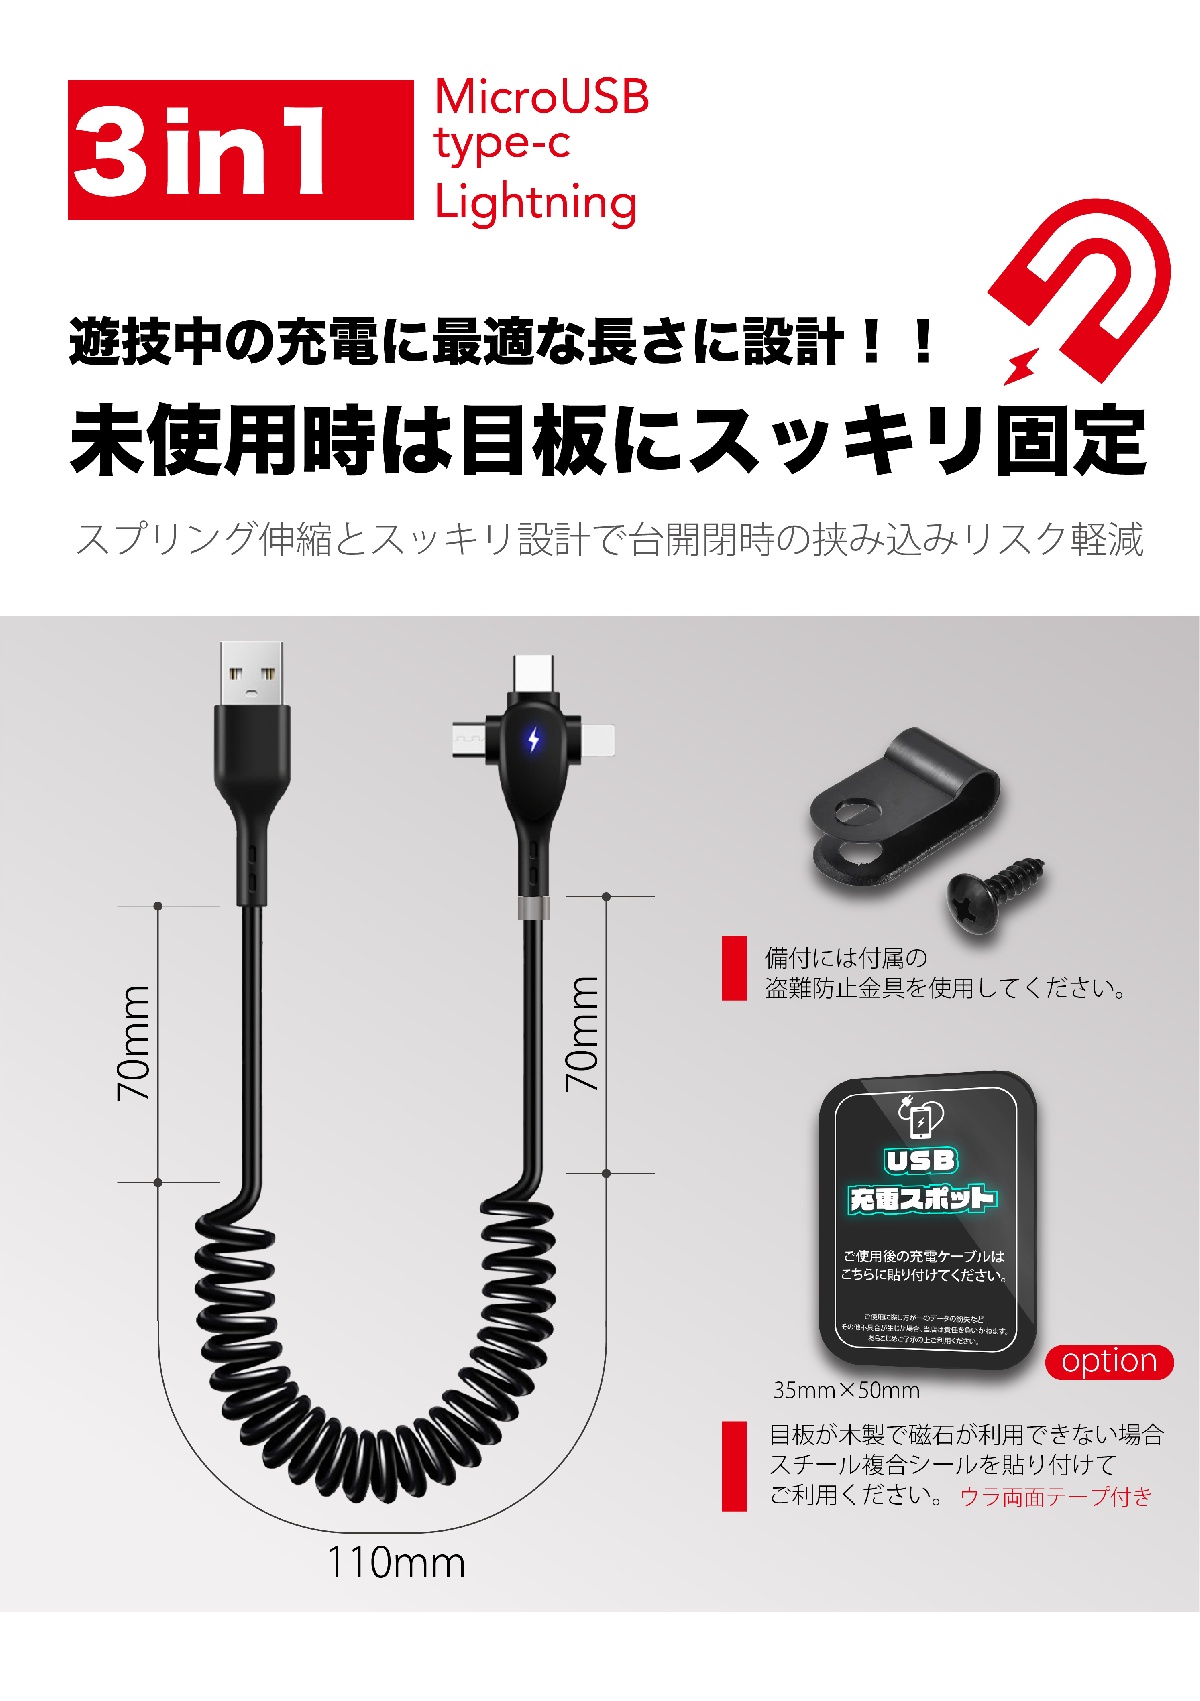 【割引フェア30%OFF】３in1 USB充電ケーブル 急速充電対応